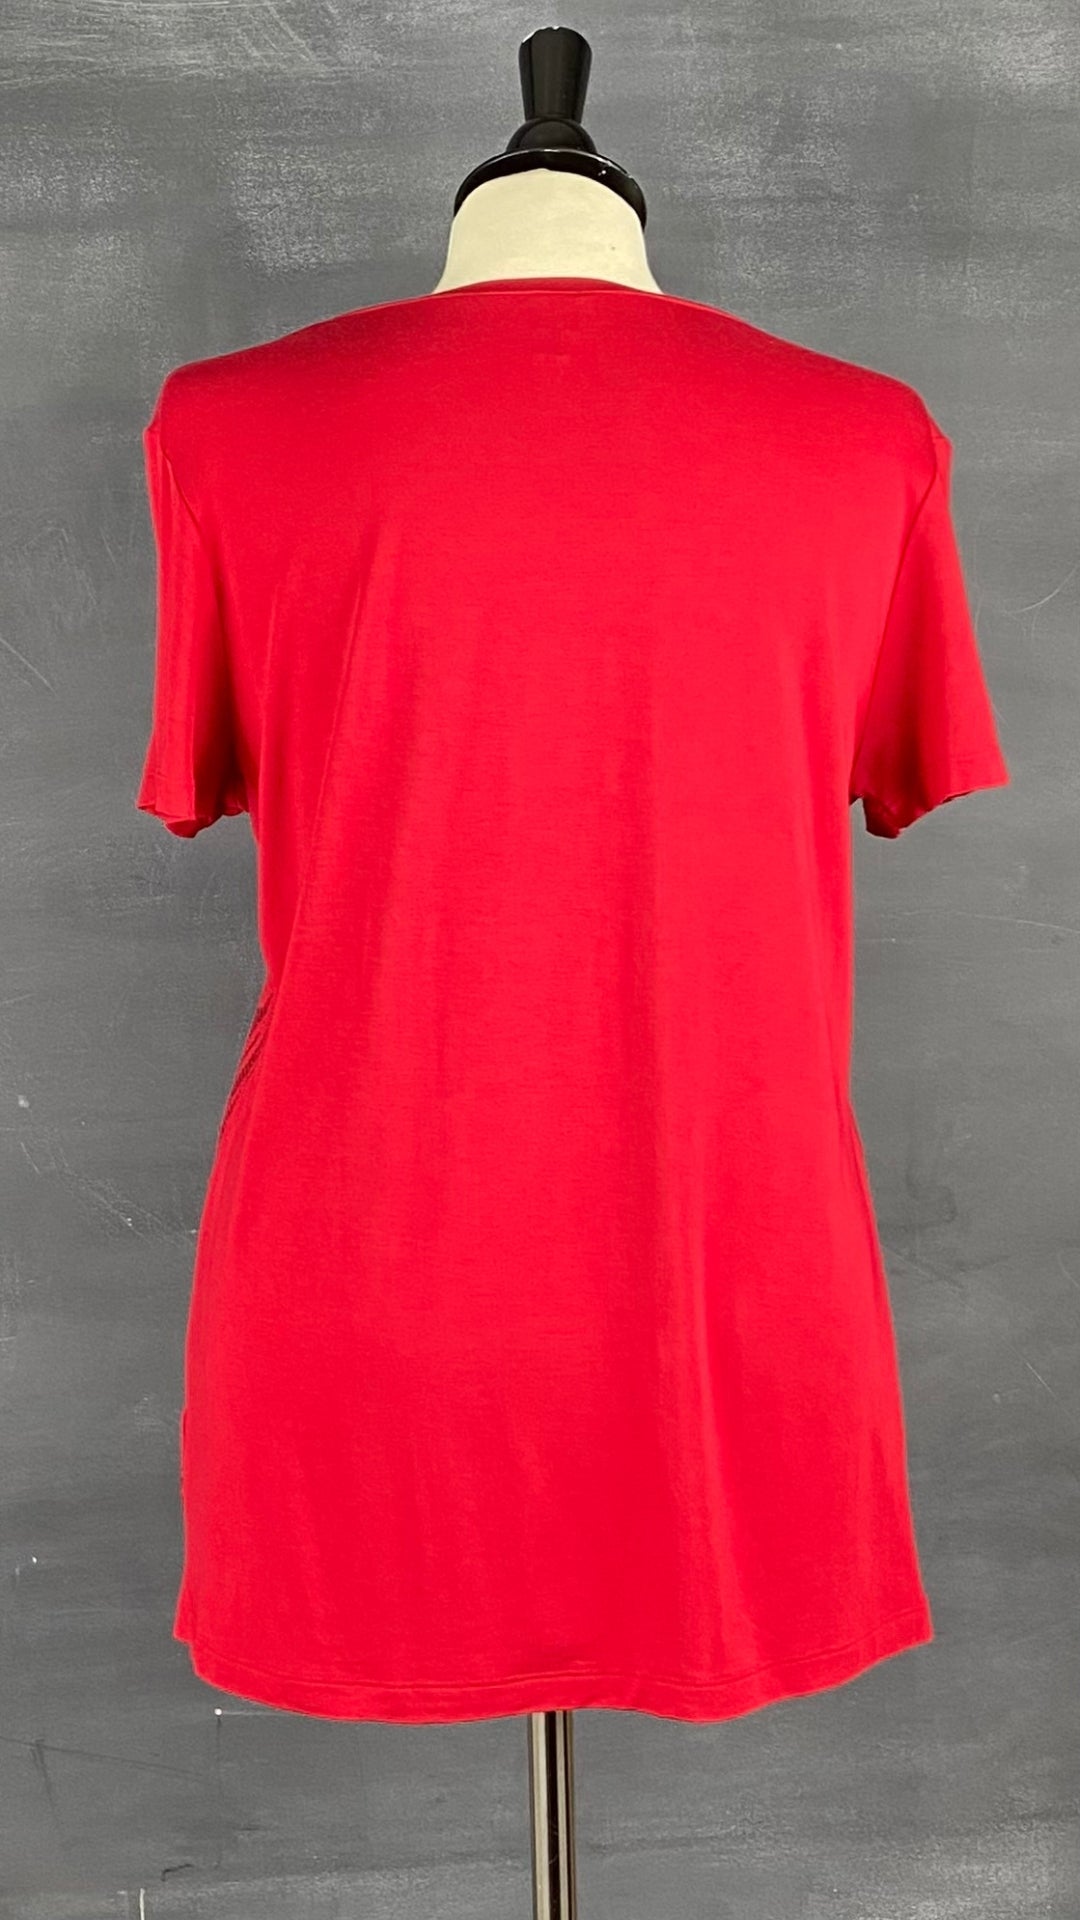 Un joli t-shirt rouge à paillettes pour égayer tes looks festifs. Vue de dos.